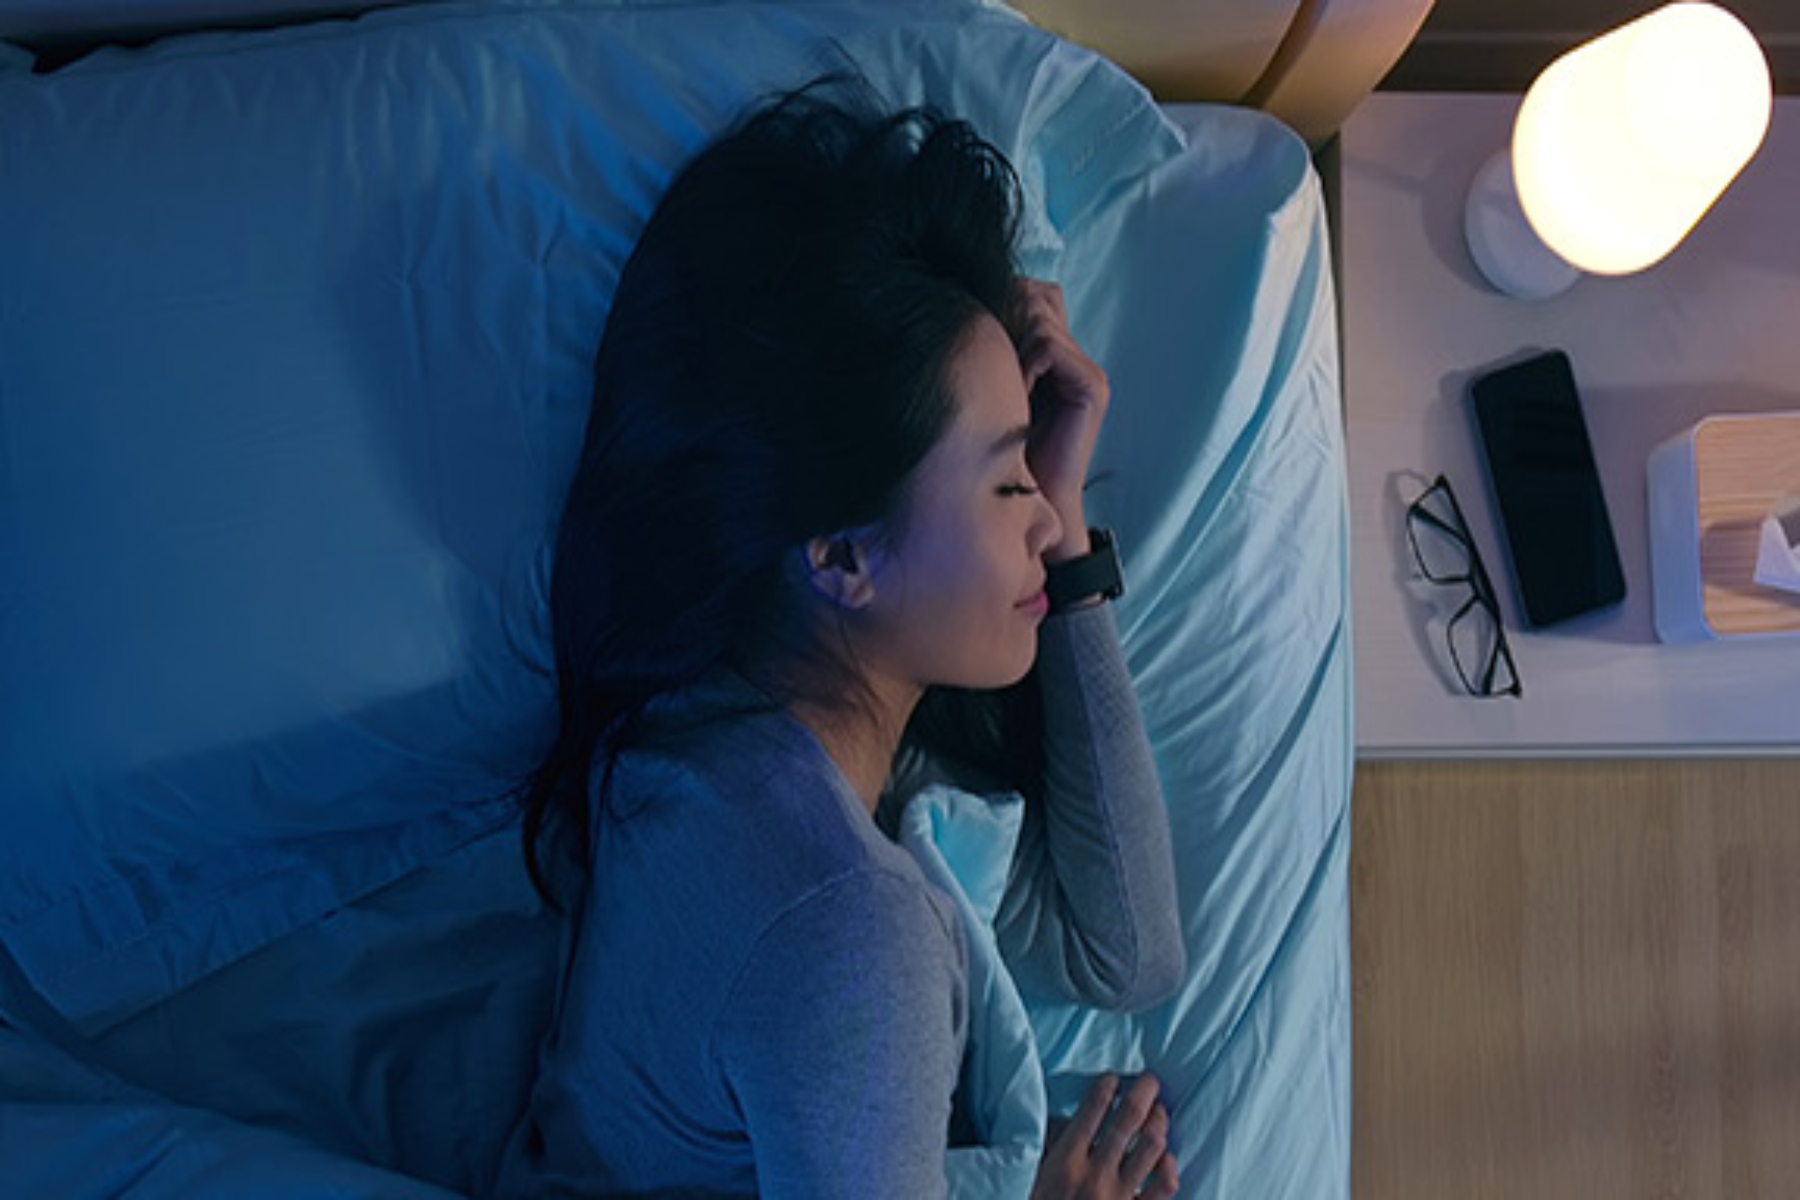 Ύπνος: Πώς μπορεί ο ύπνος να βελτιωθεί με την χρήση της τεχνολογίας;